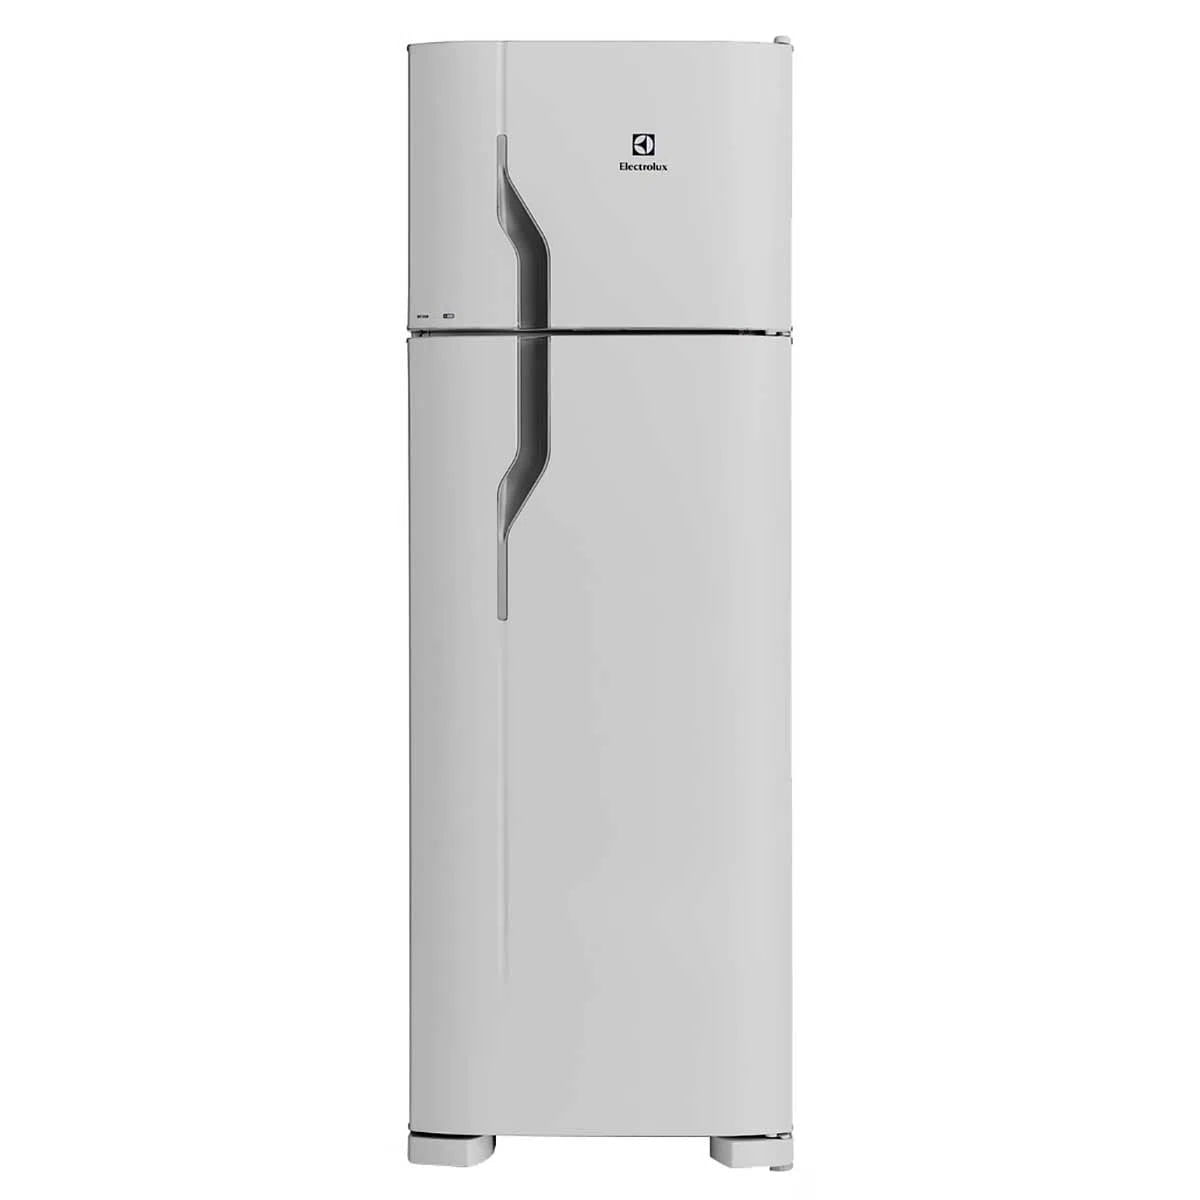 geladeira-electrolux-2-portas-dc35a-260-litros-branca-220v-1.jpg